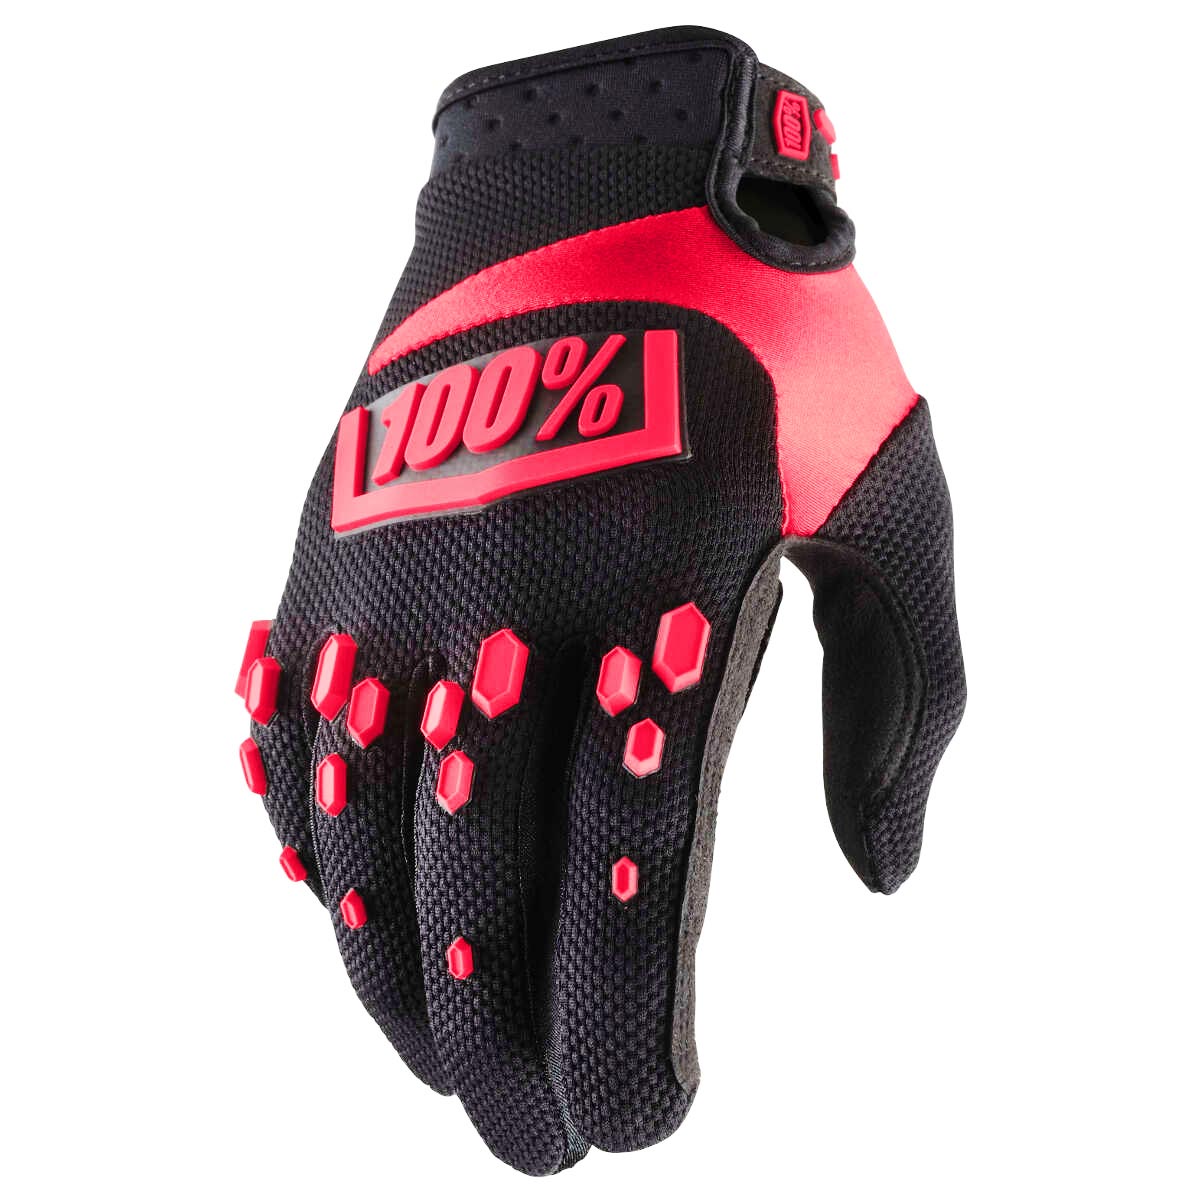 100% Bike Gloves Airmatic Black/Red